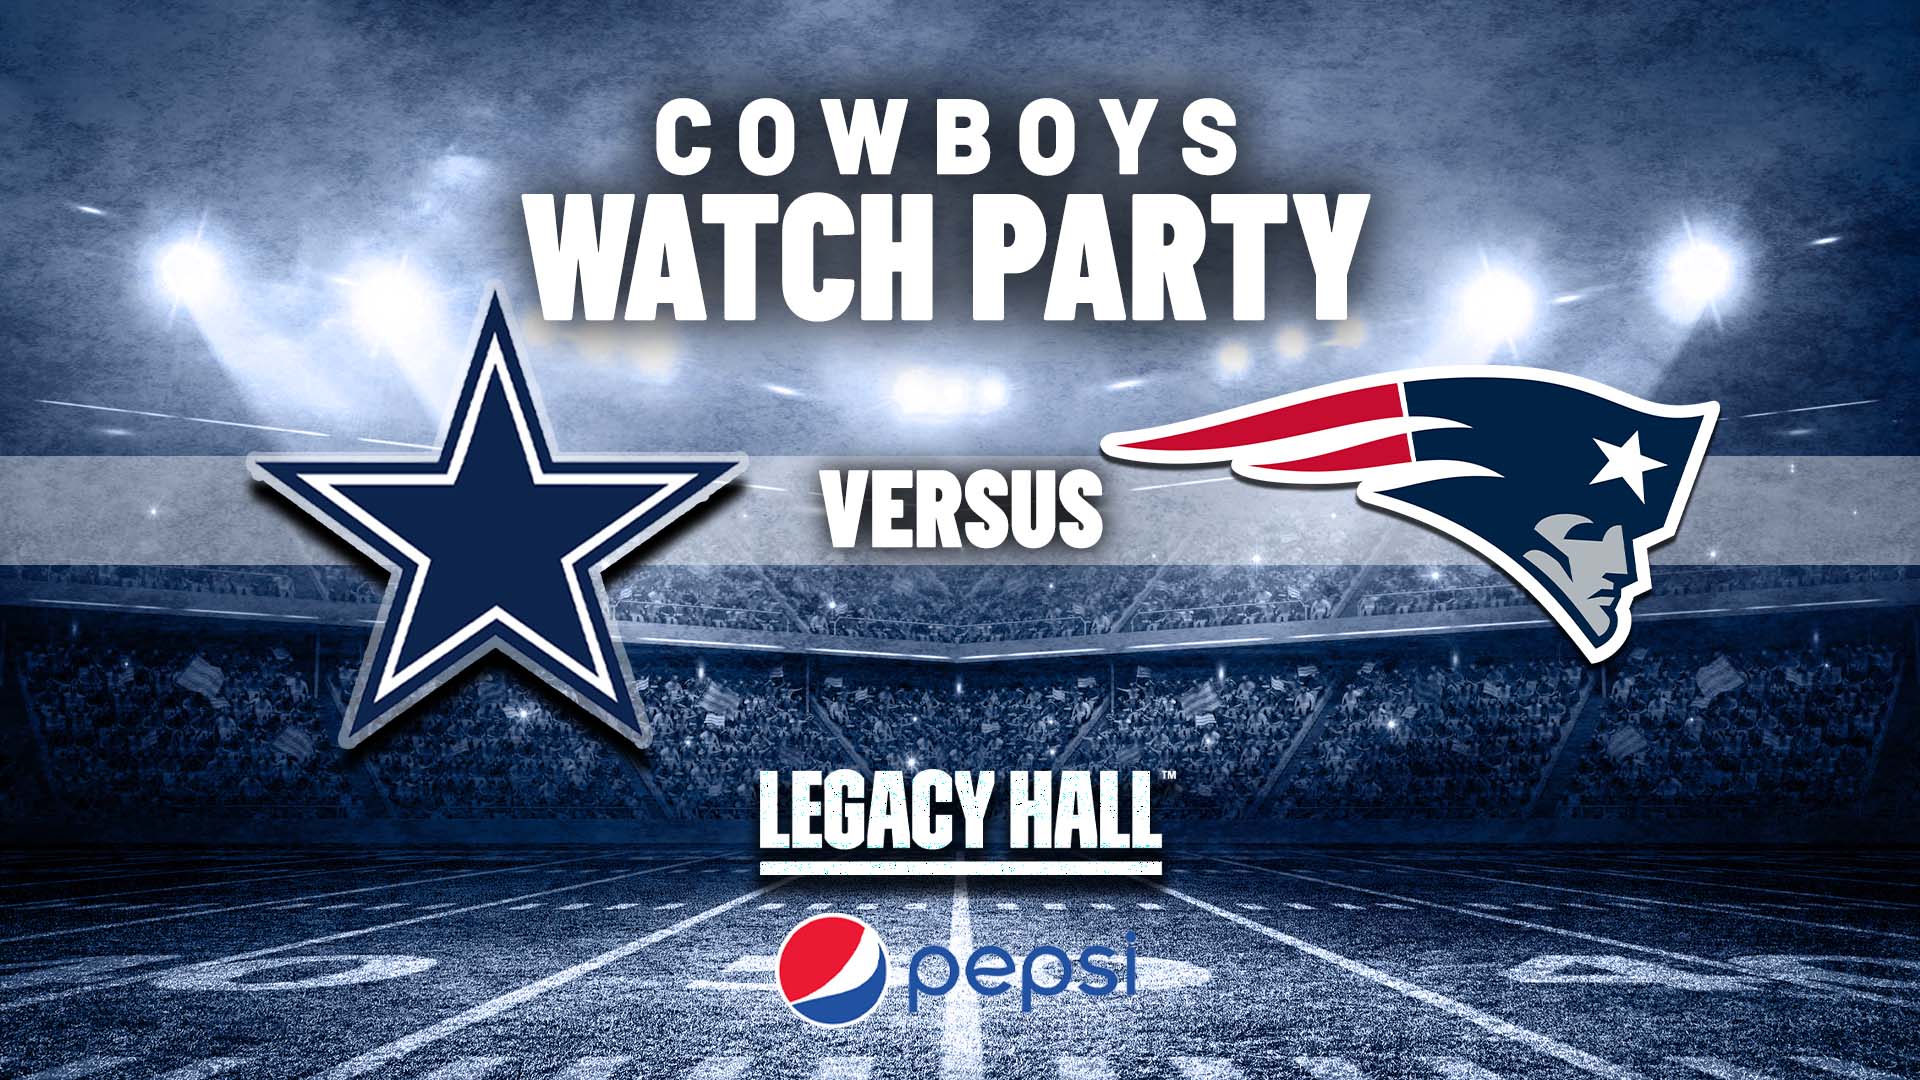 Cowboys vs. Patriots Watch Party - hero